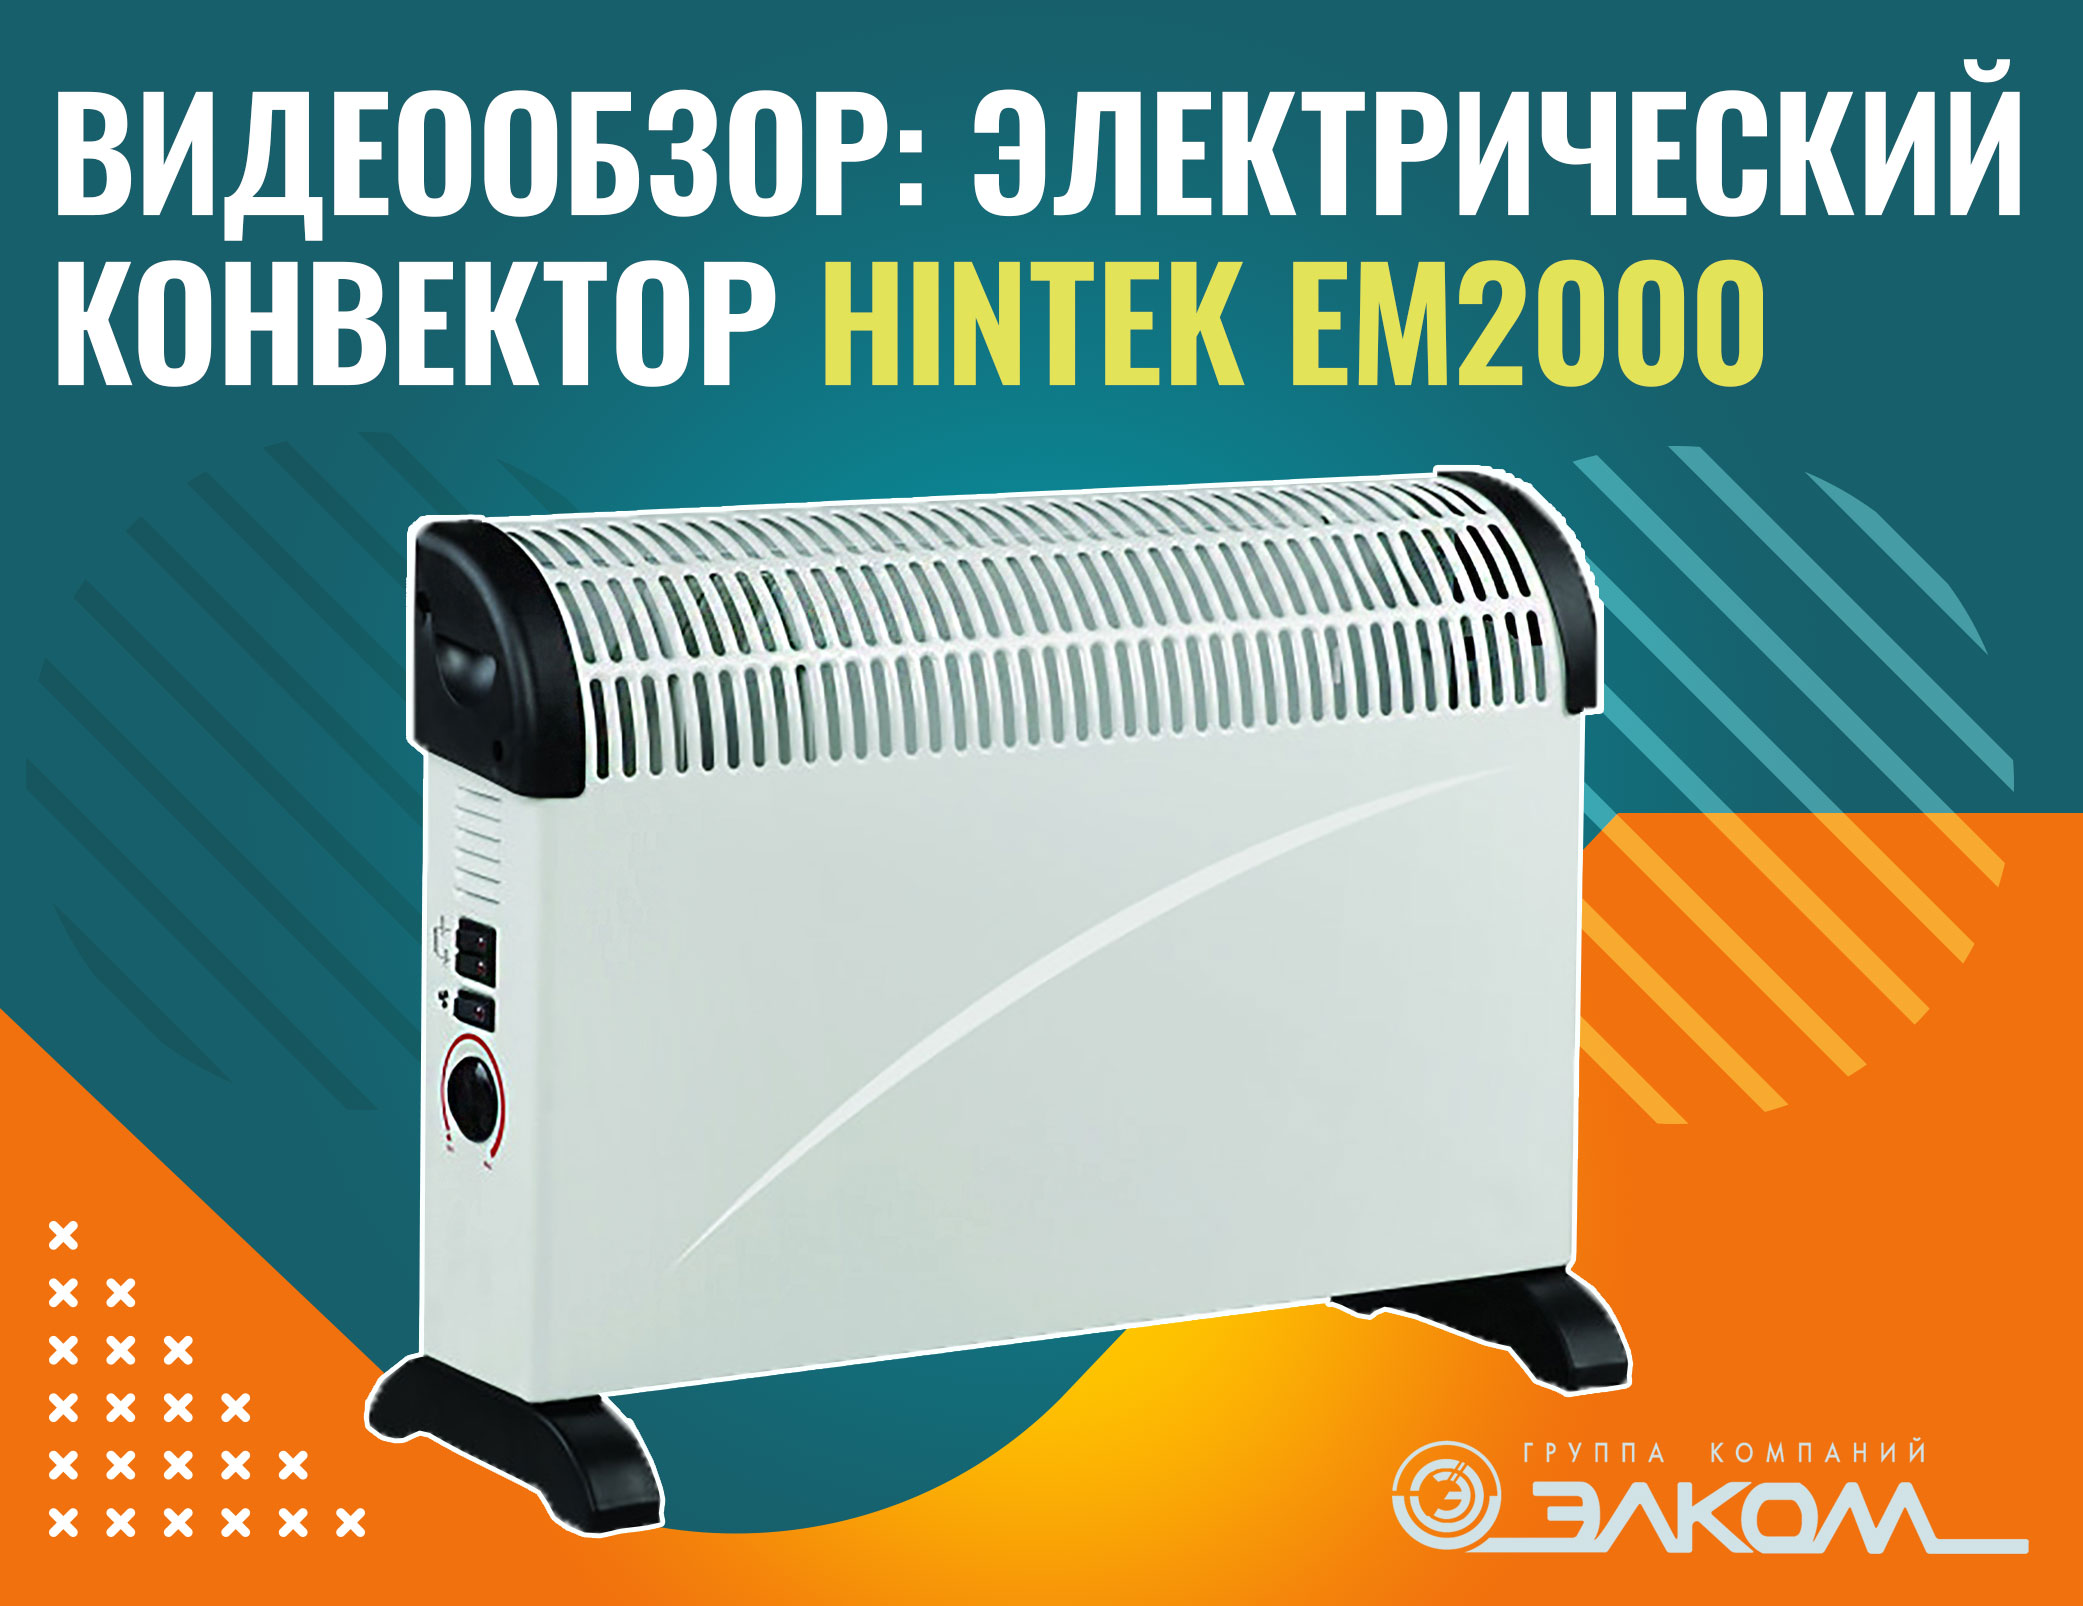 Видеообзор: электрический конвектор HINTEK EM2000